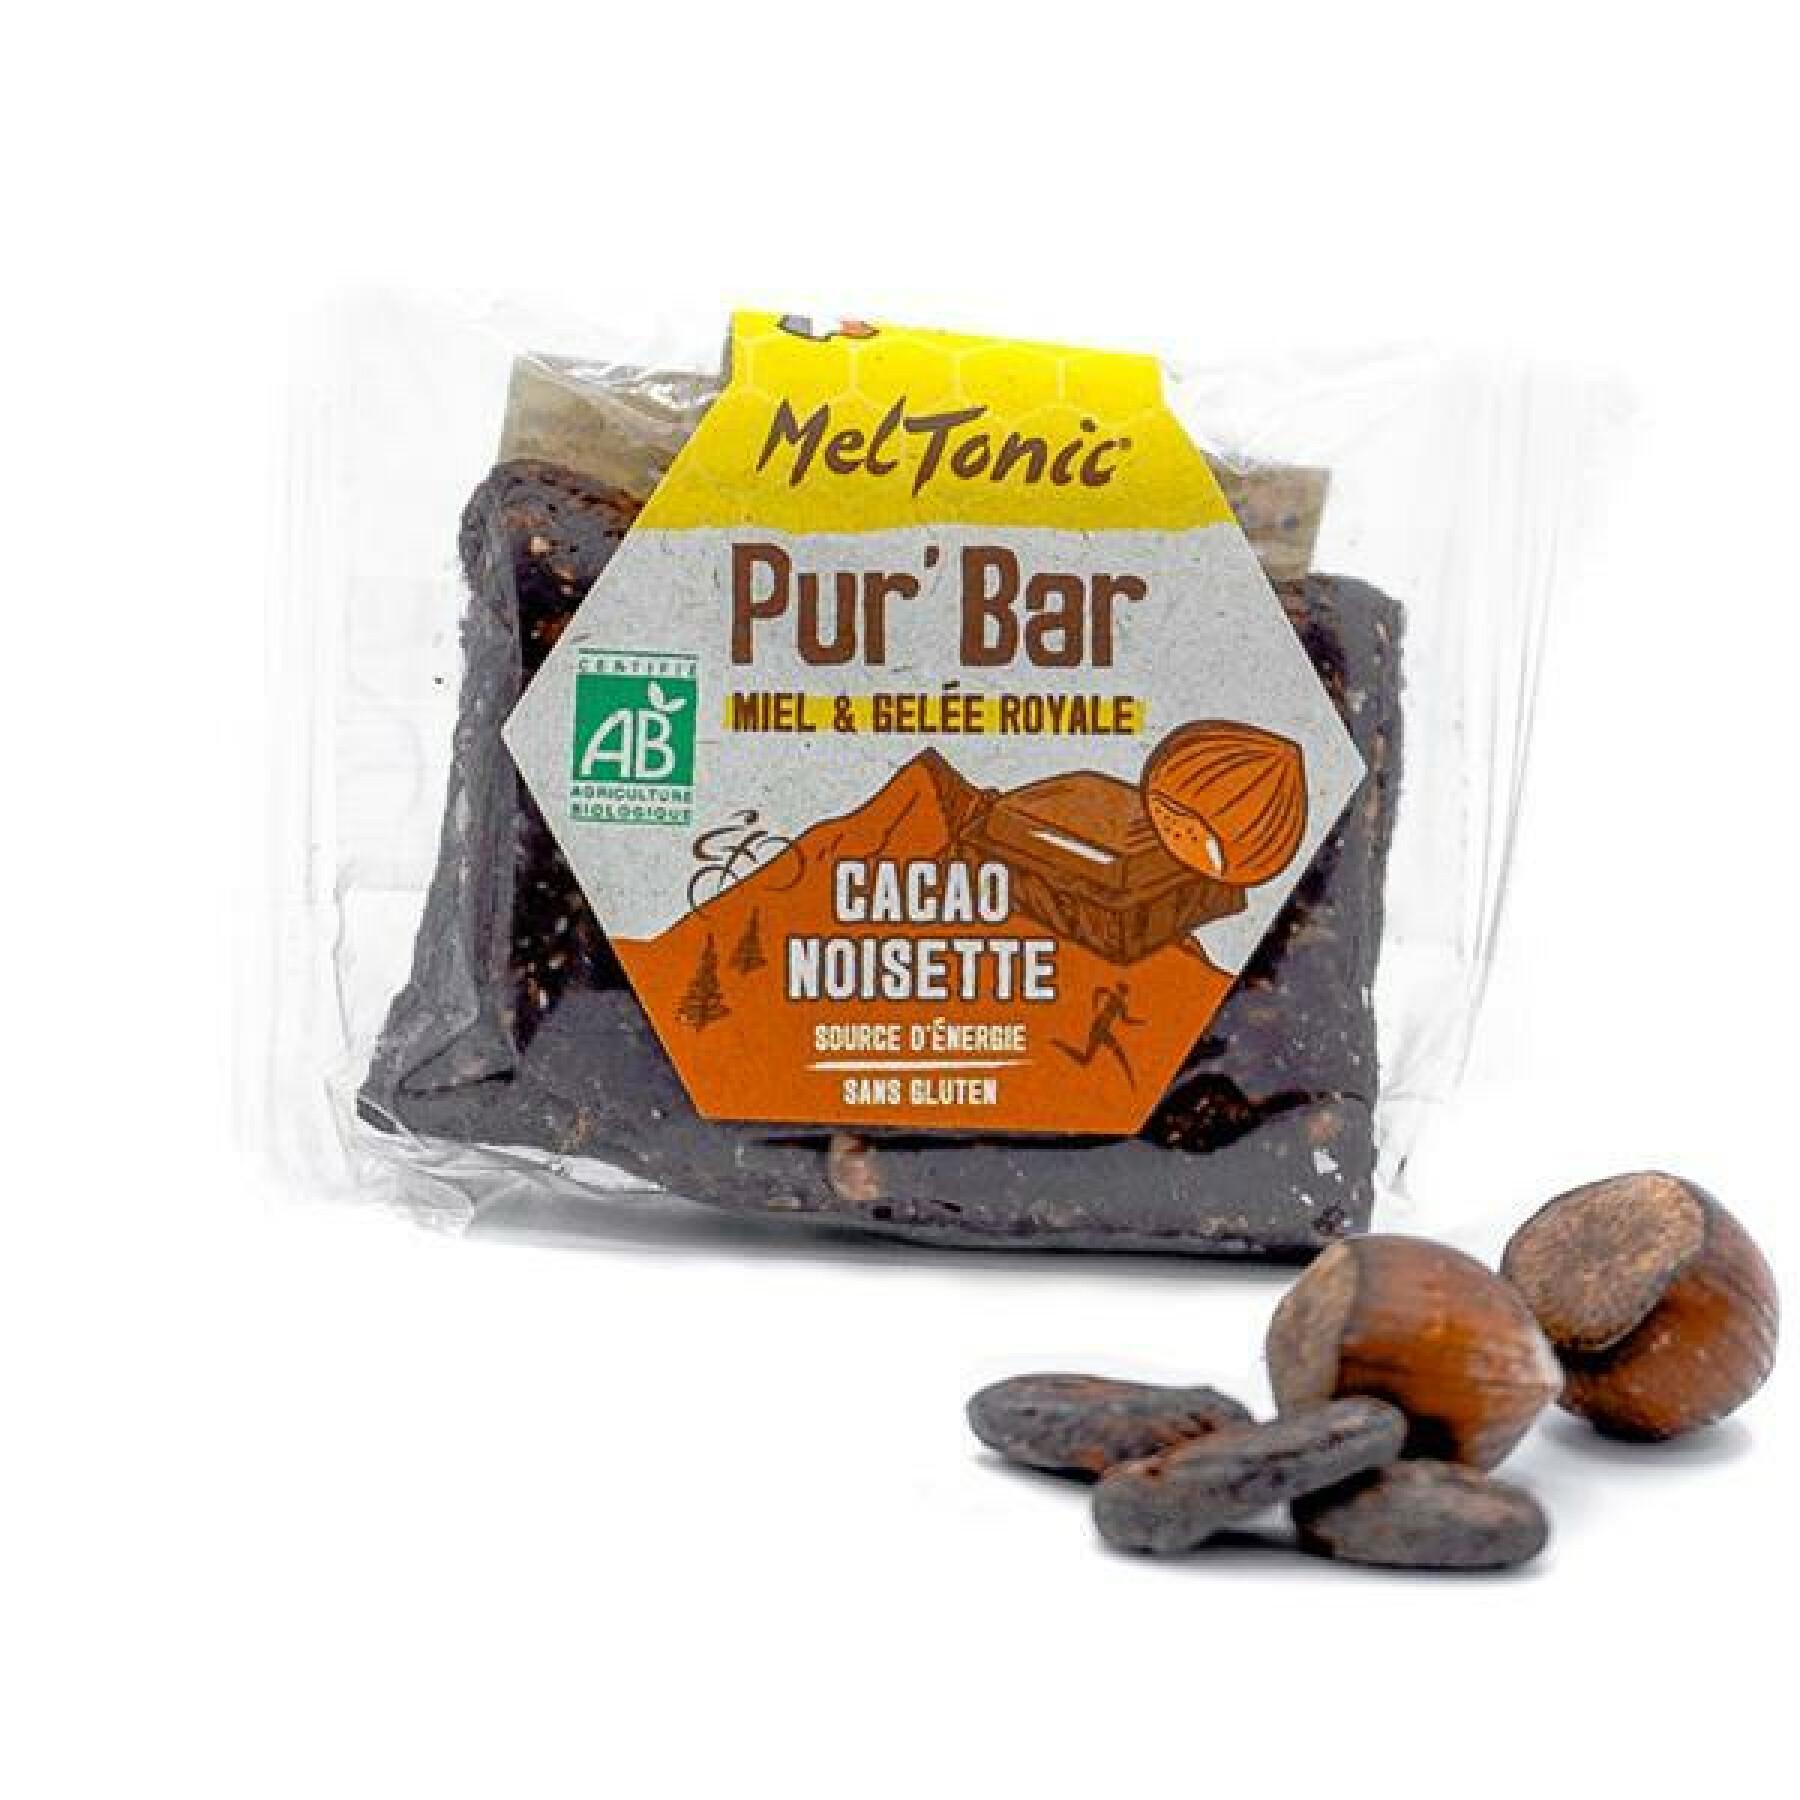 Boîte de 12 barres de nutrition bio cacao noisette miel & gelée royale Meltonic Pur 50 g